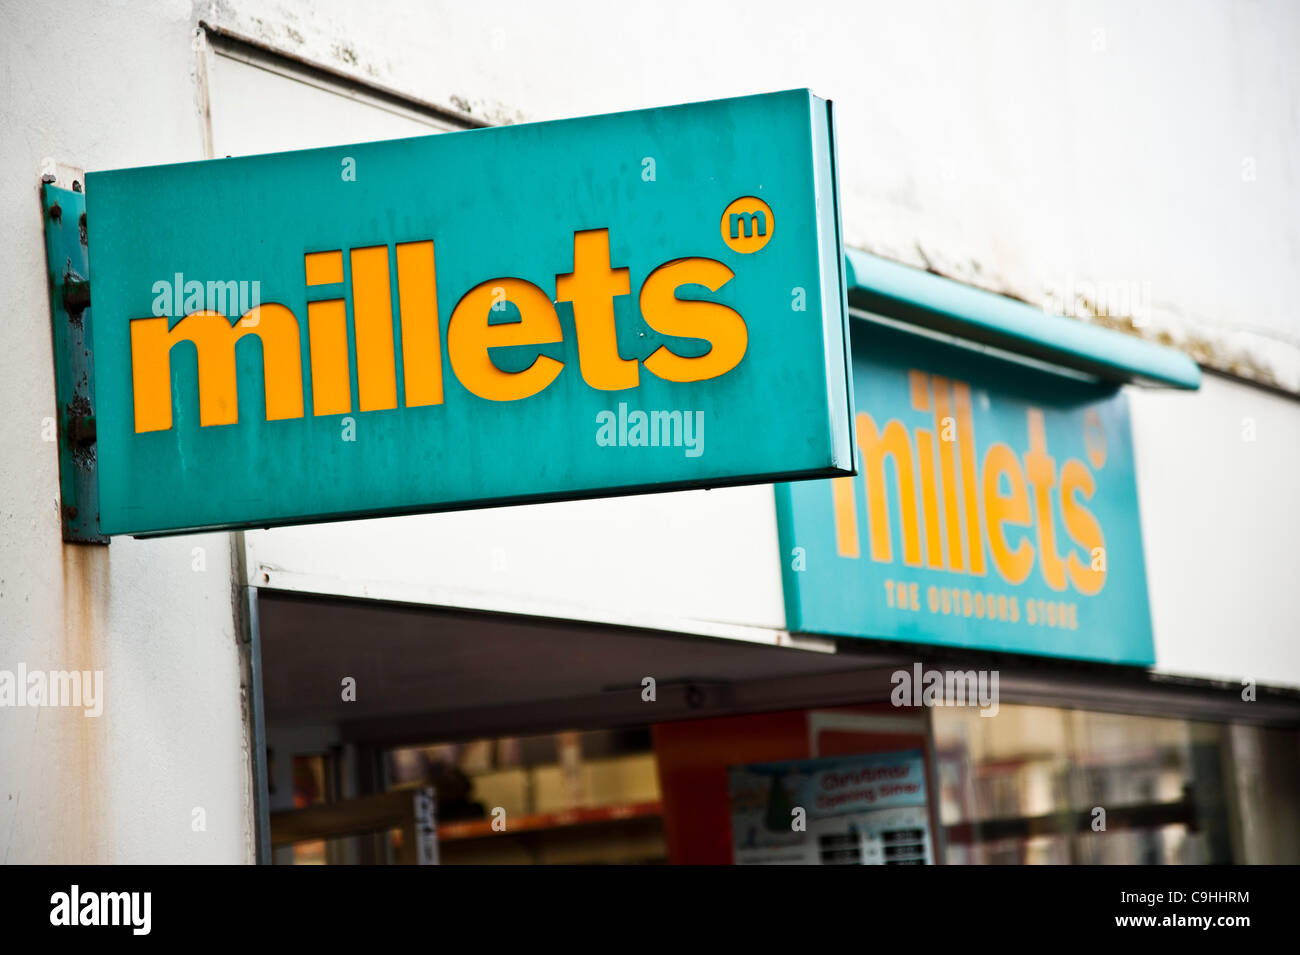 Royaume-uni Aberystwyth Jan 7 2012 une branche de Millet Outdoor et camping shop, une partie de la chaîne de magasins noirs qui est entré en liquidation volontaire le 5 jan 2012.